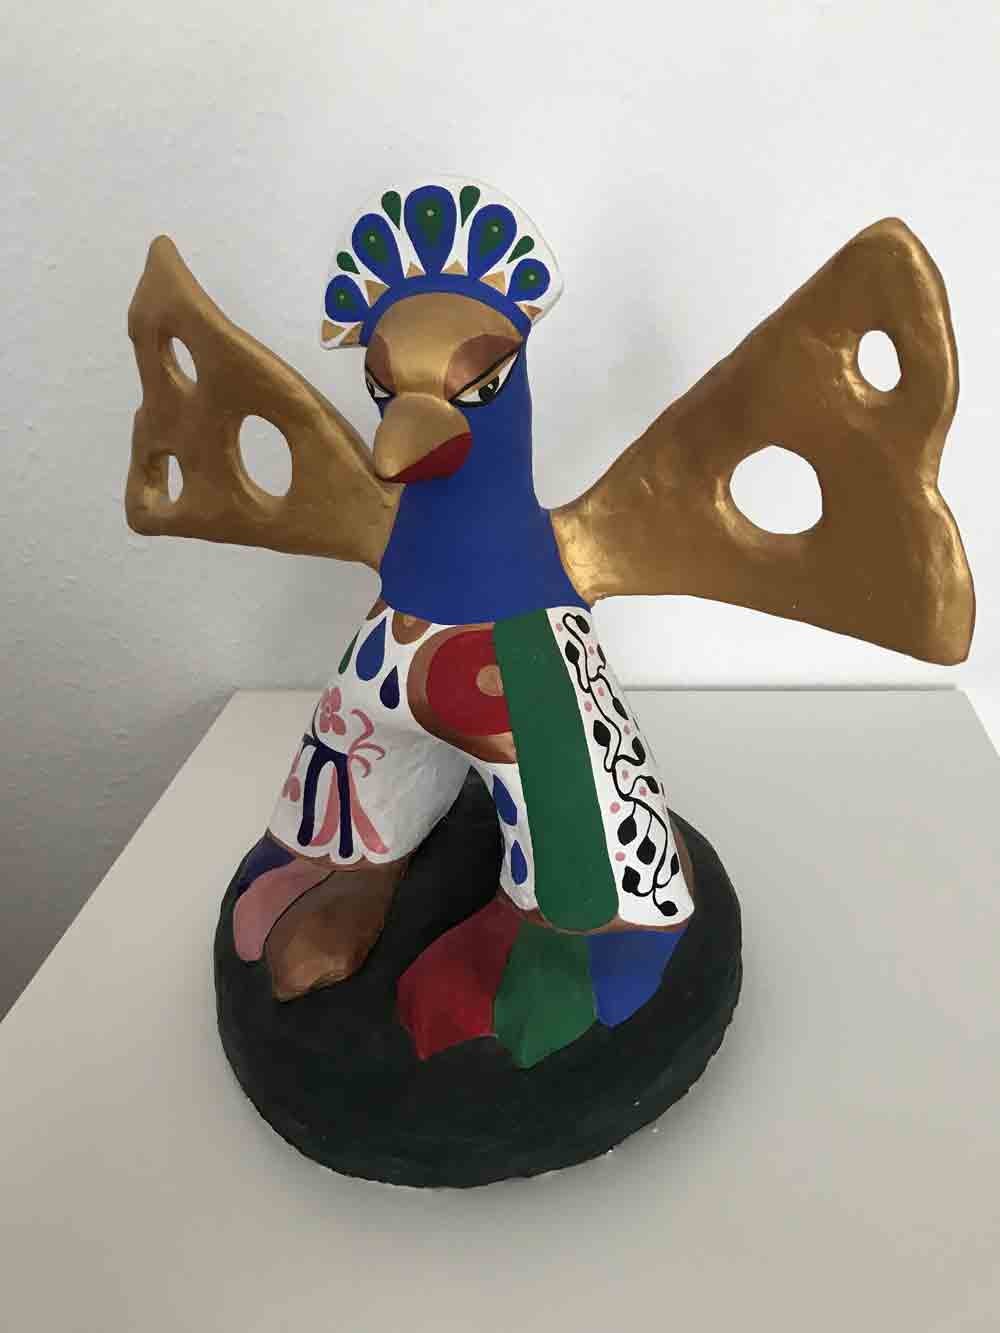 Kunst aus Gütersloh: ein Vogel im Stil der »Nanas« von Niki de Saint Phalle